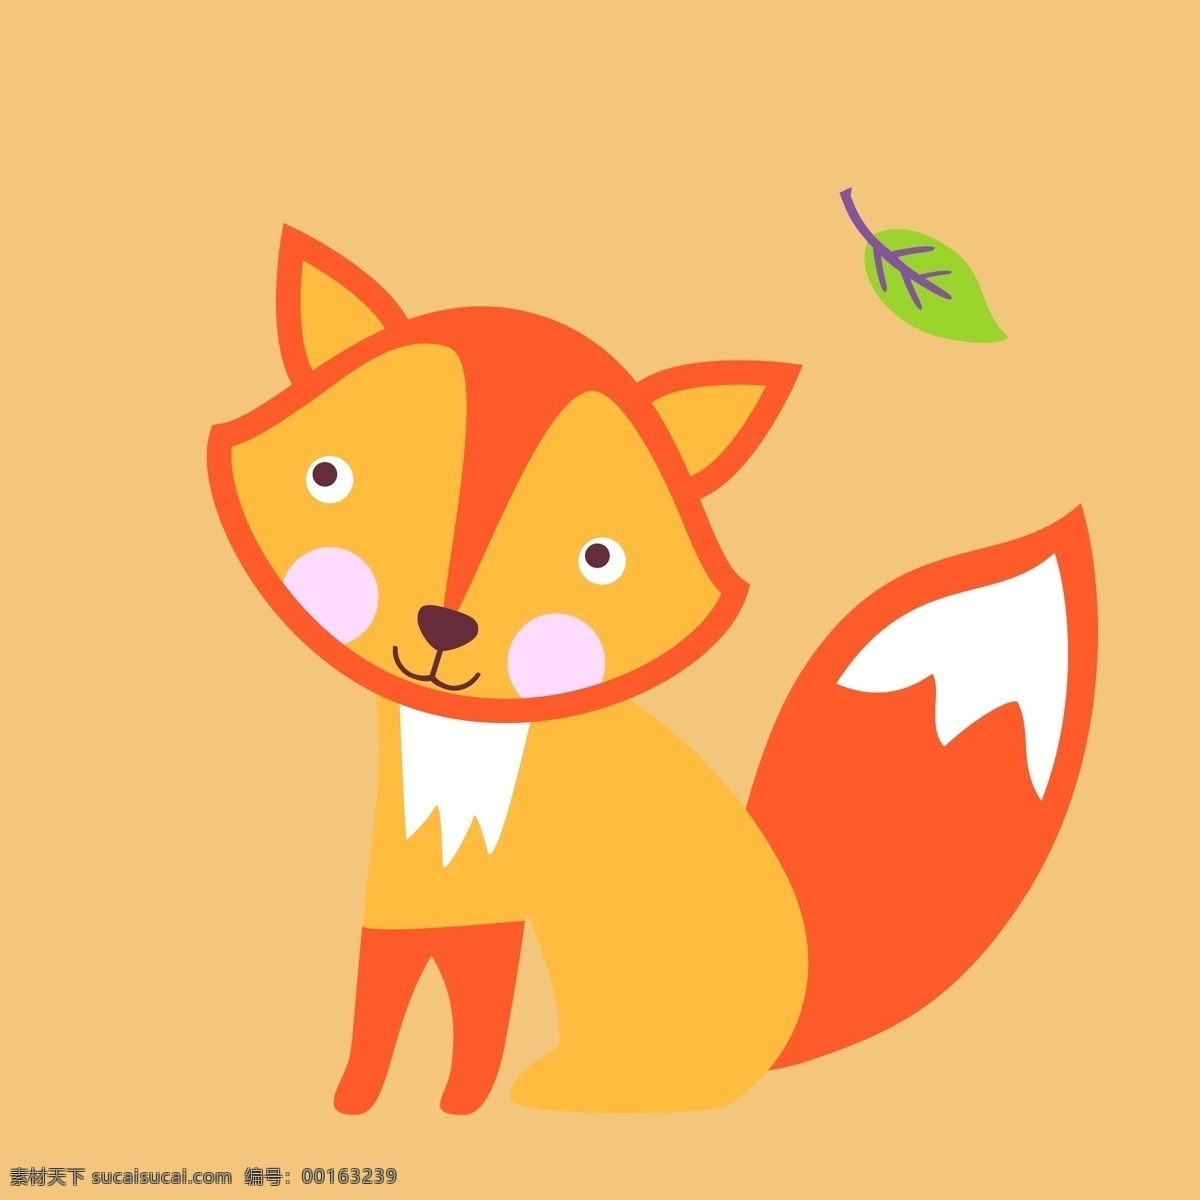 印花 矢量图 动物 服装图案 狐狸 可爱卡通 印花矢量图 植物 面料图库 服装设计 图案花型